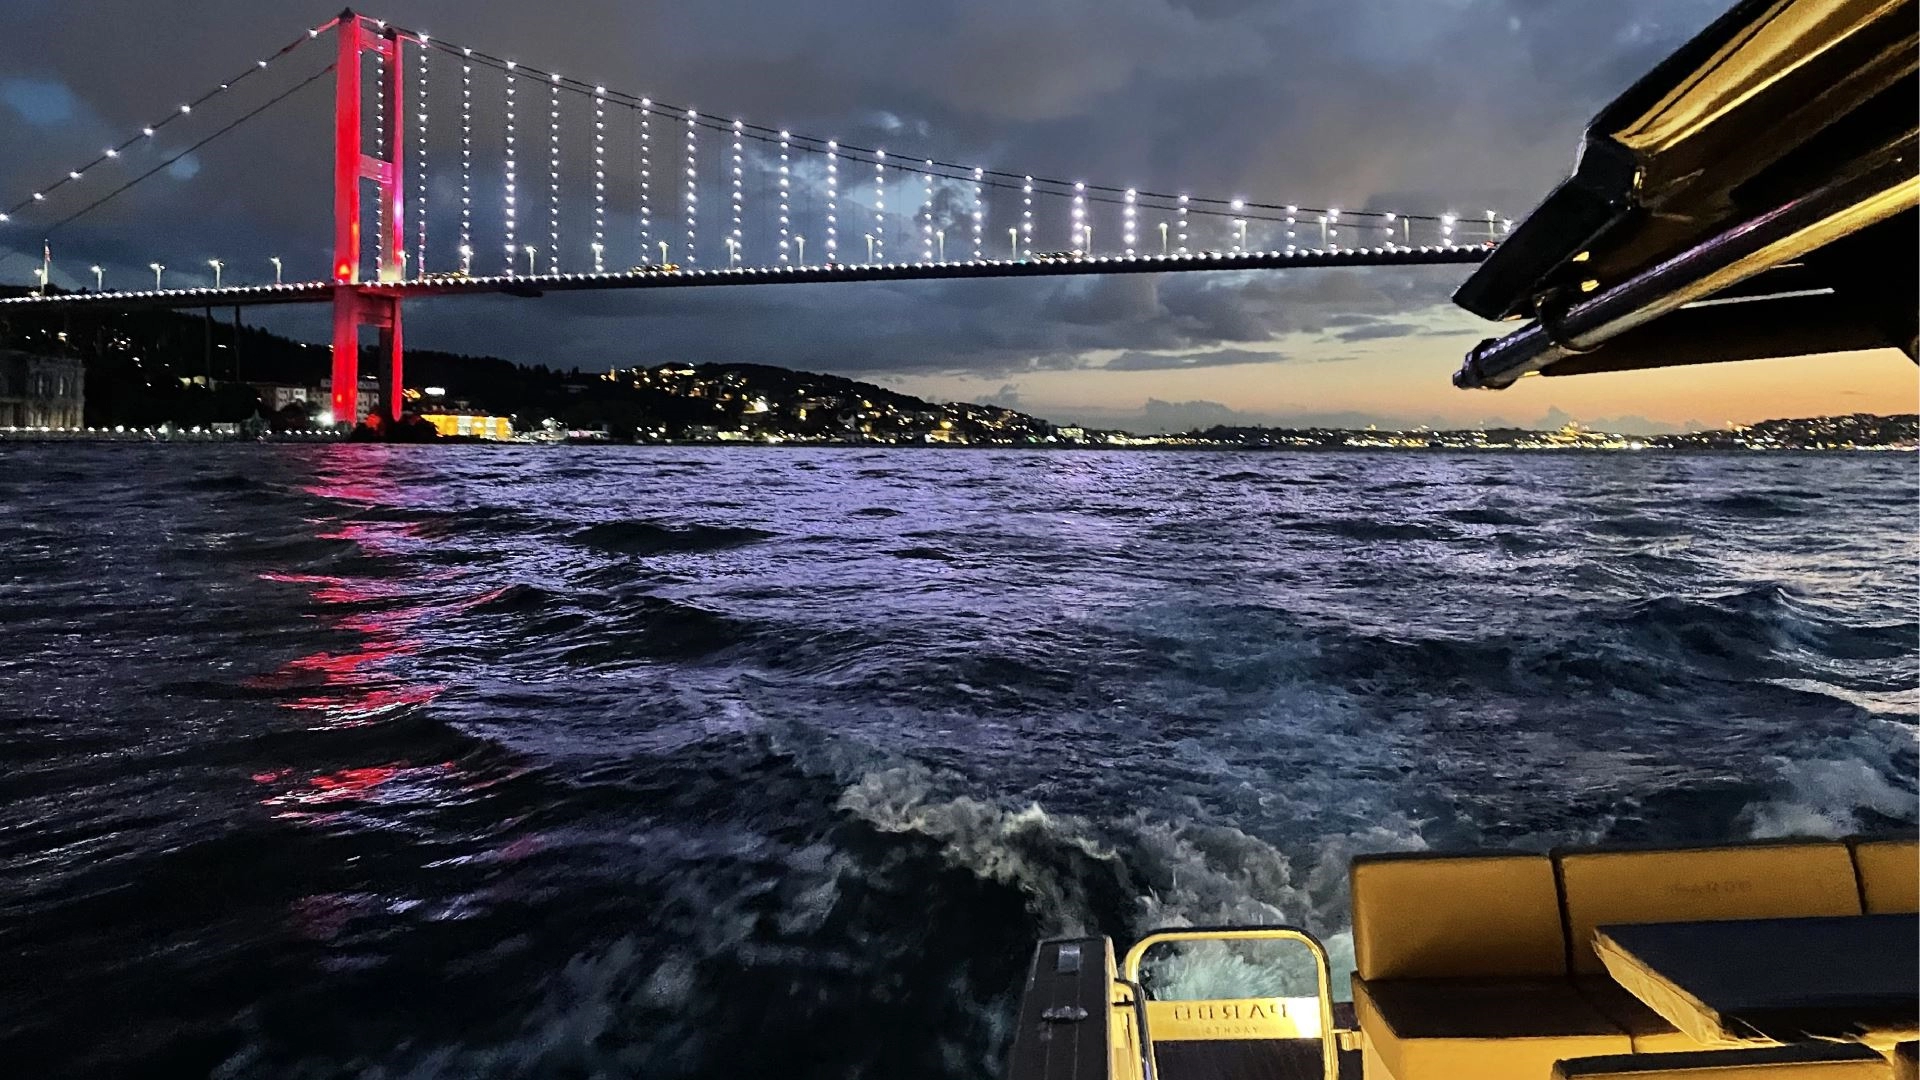 İstanbul/Bosphorus image